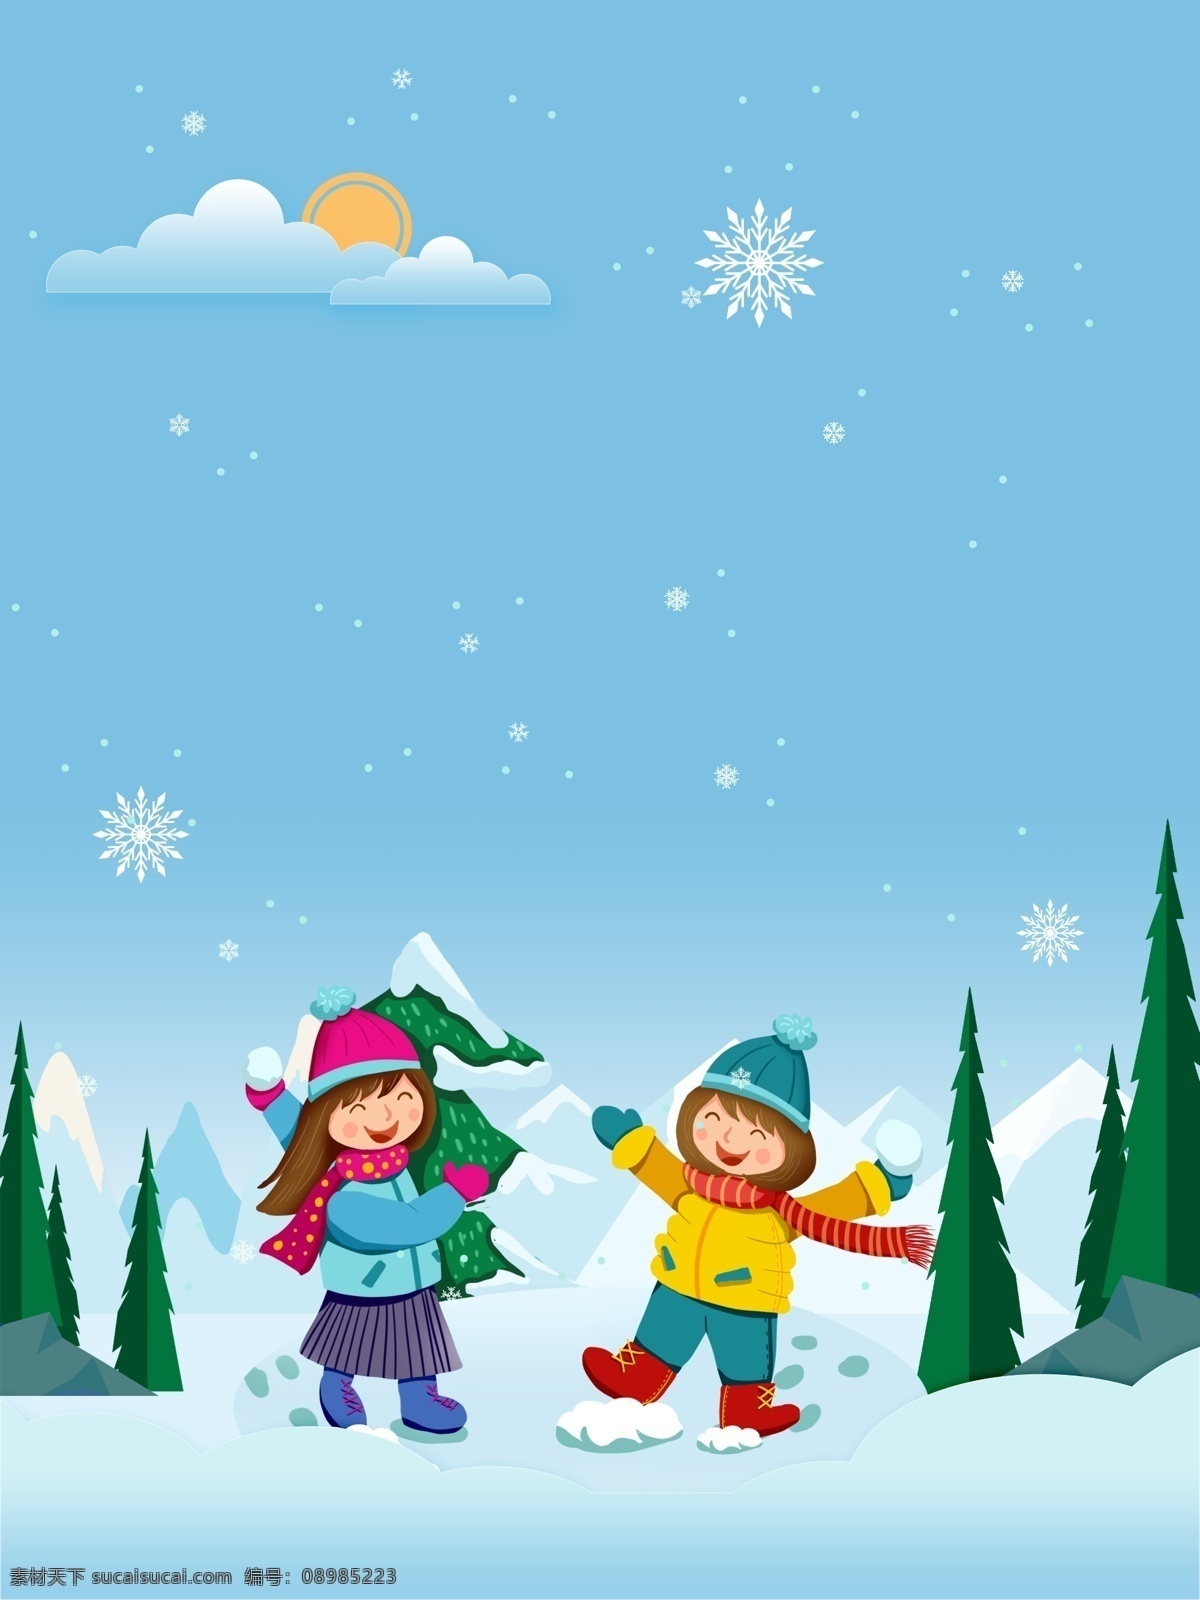 冬季 雪地 儿童 雪人 背景 冬至背景 下雪 冬天 冬至节气 传统节气 少儿滑雪背景 24节气冬天 冬至背景图